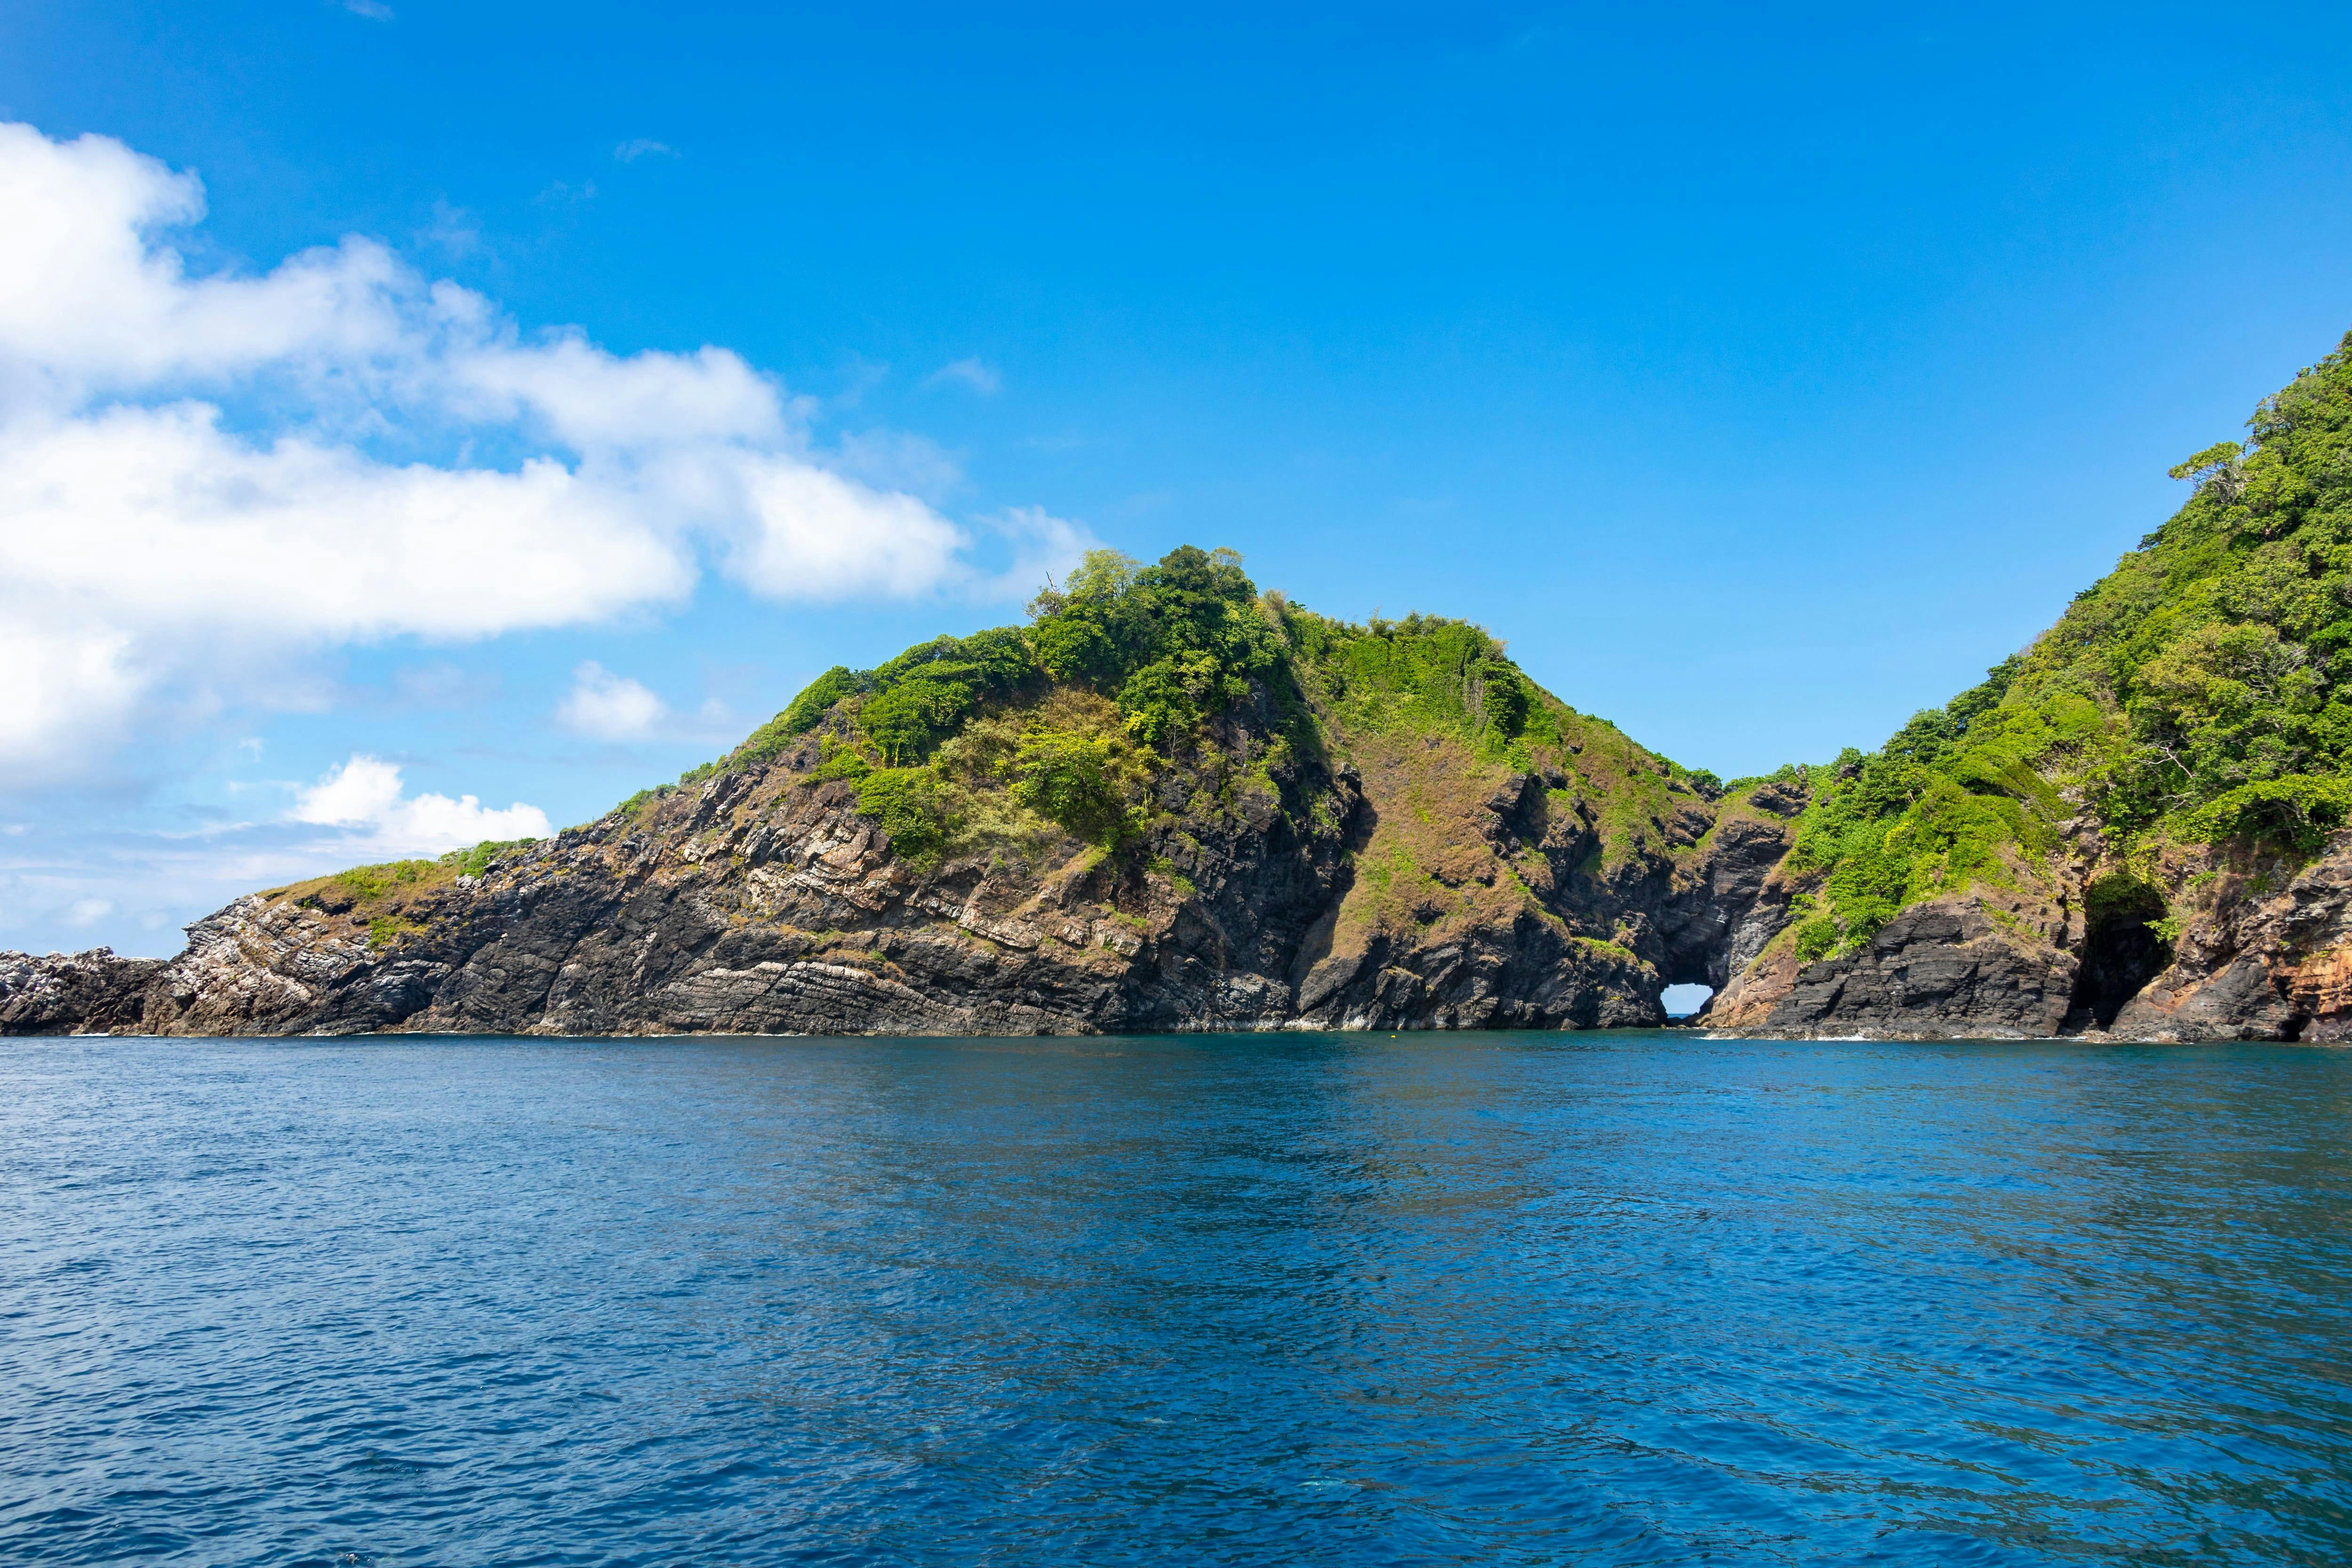 Similan Islands by Speedboat – Early Bird